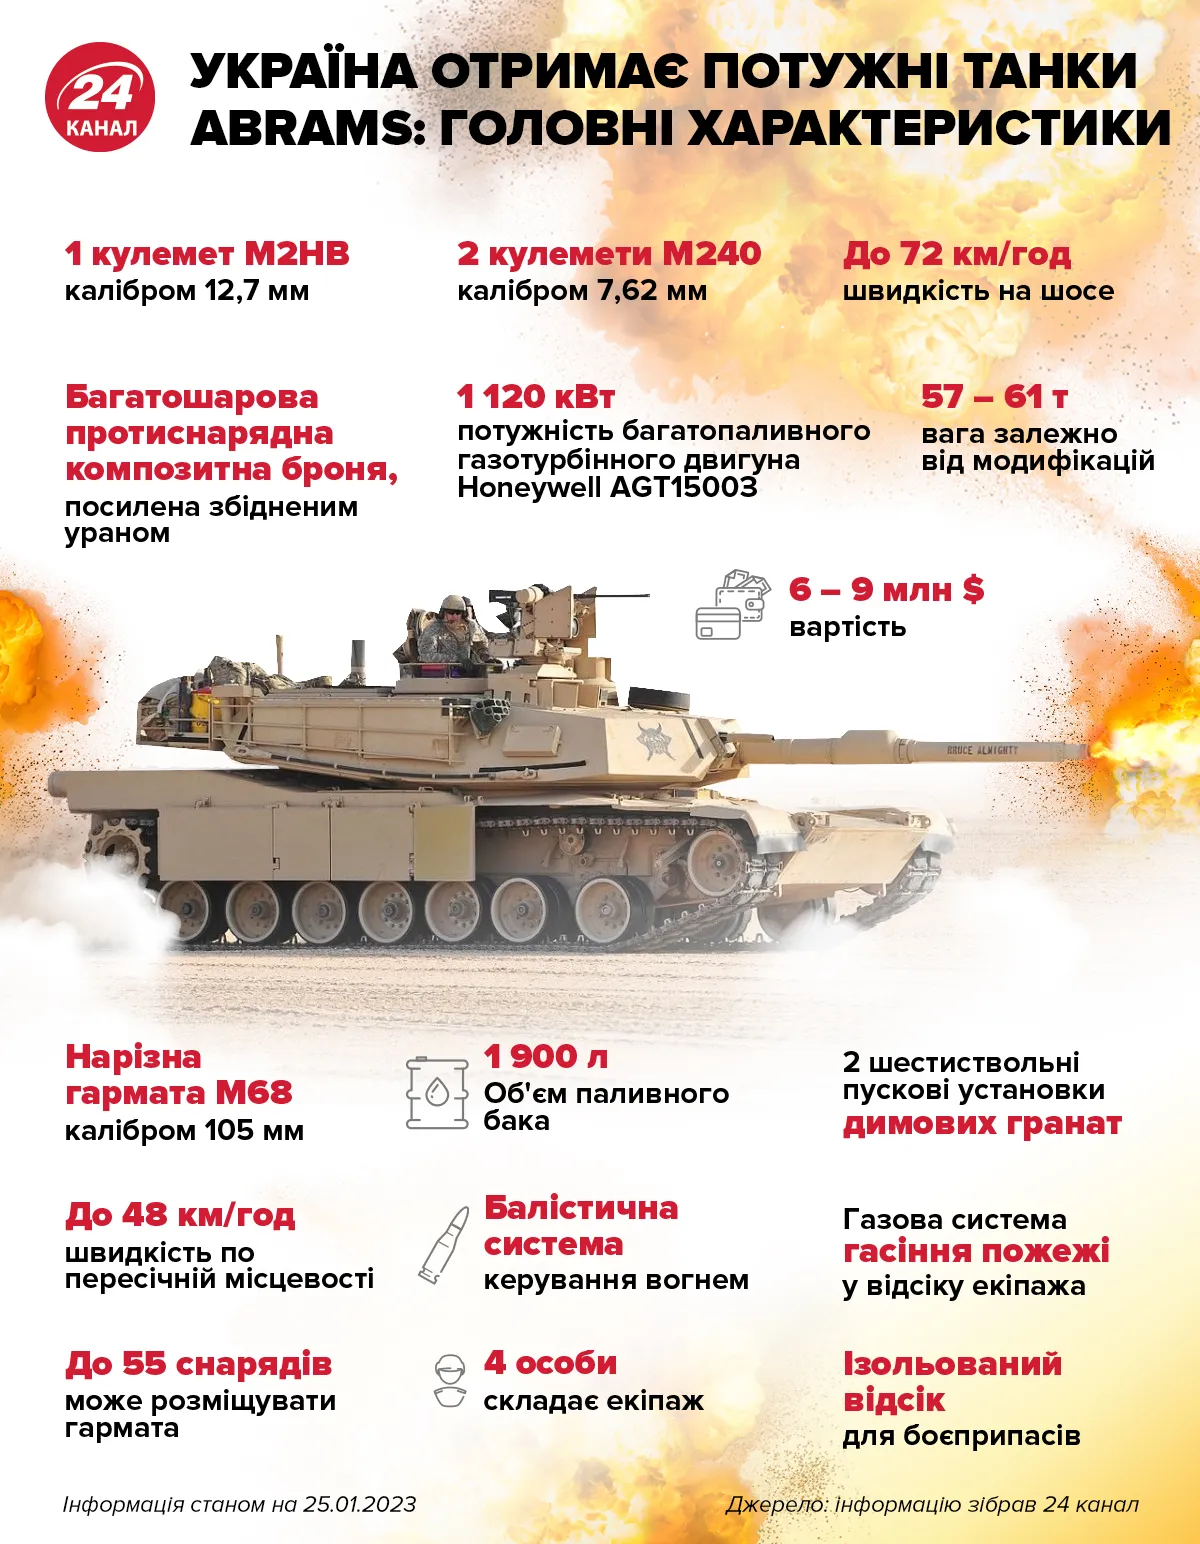 Що відомо про танки Abrams / Інфографіка 24 каналу